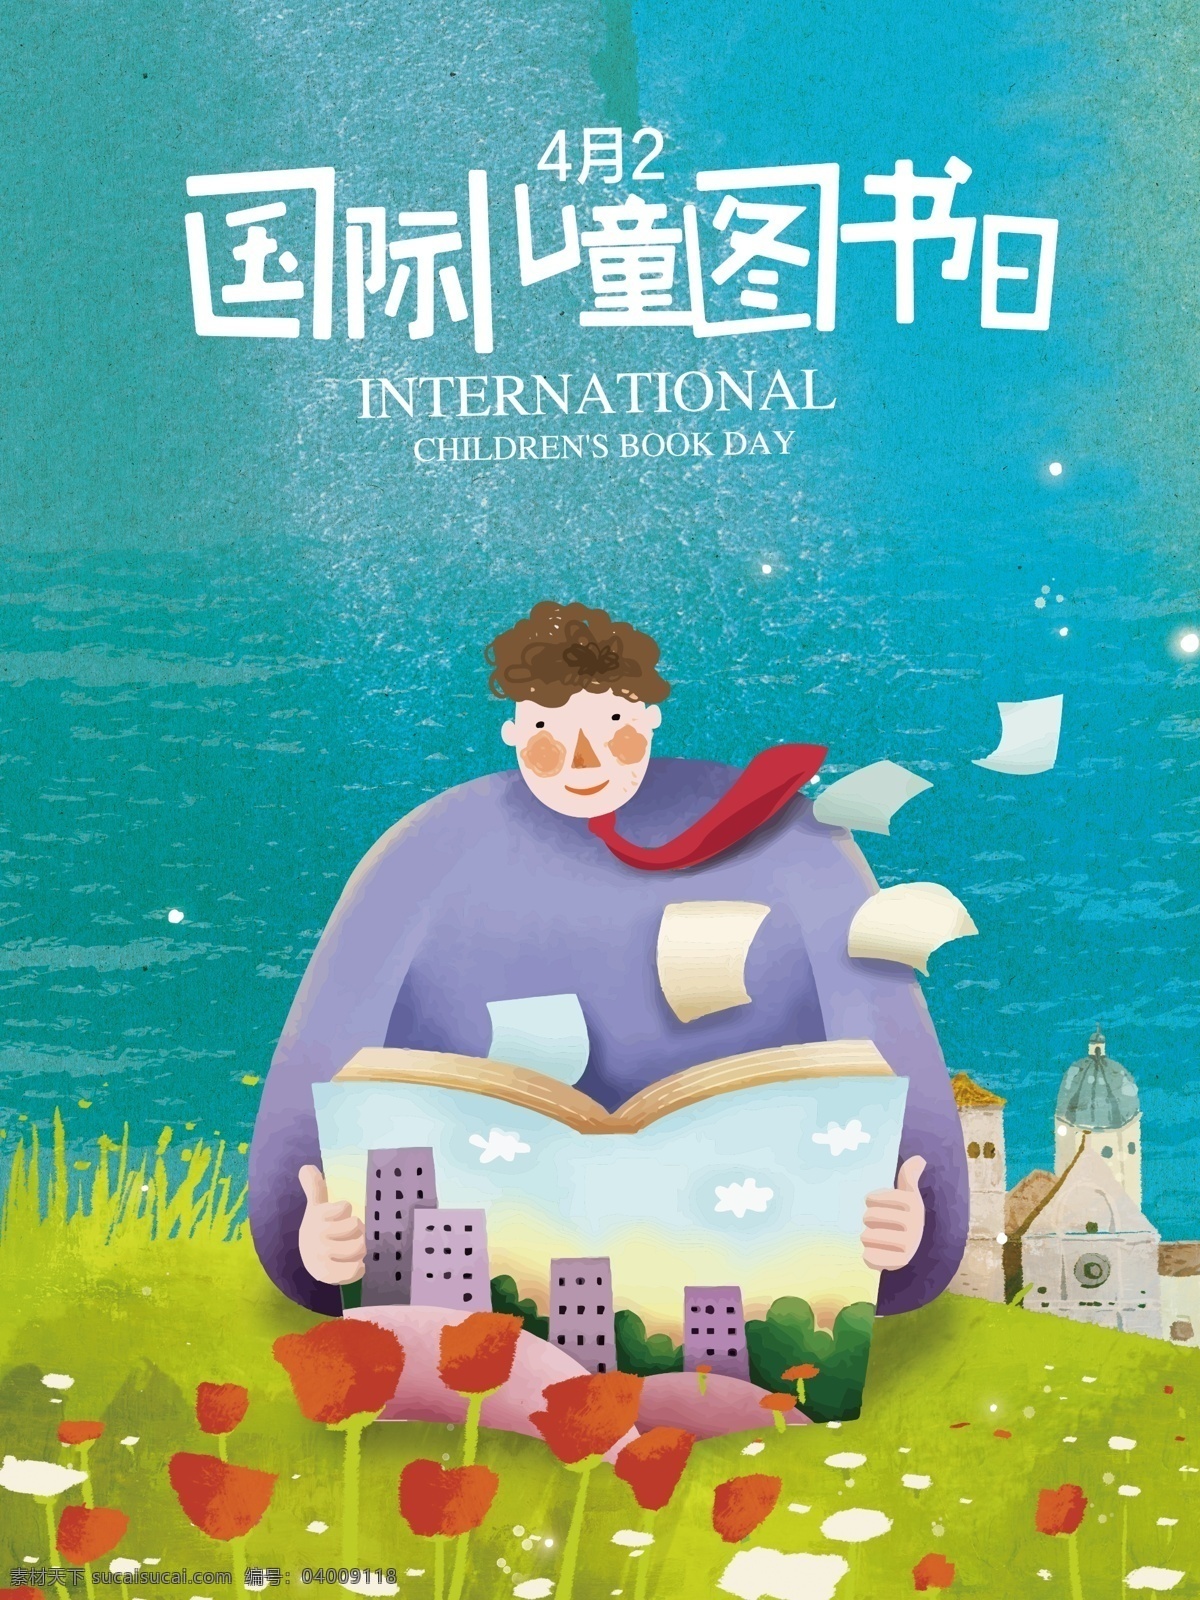 国际 儿童 图书 日 手绘 插画 唯美 背景 简约 书本 小孩矢量 云朵 海报 4月2日 儿童图书日